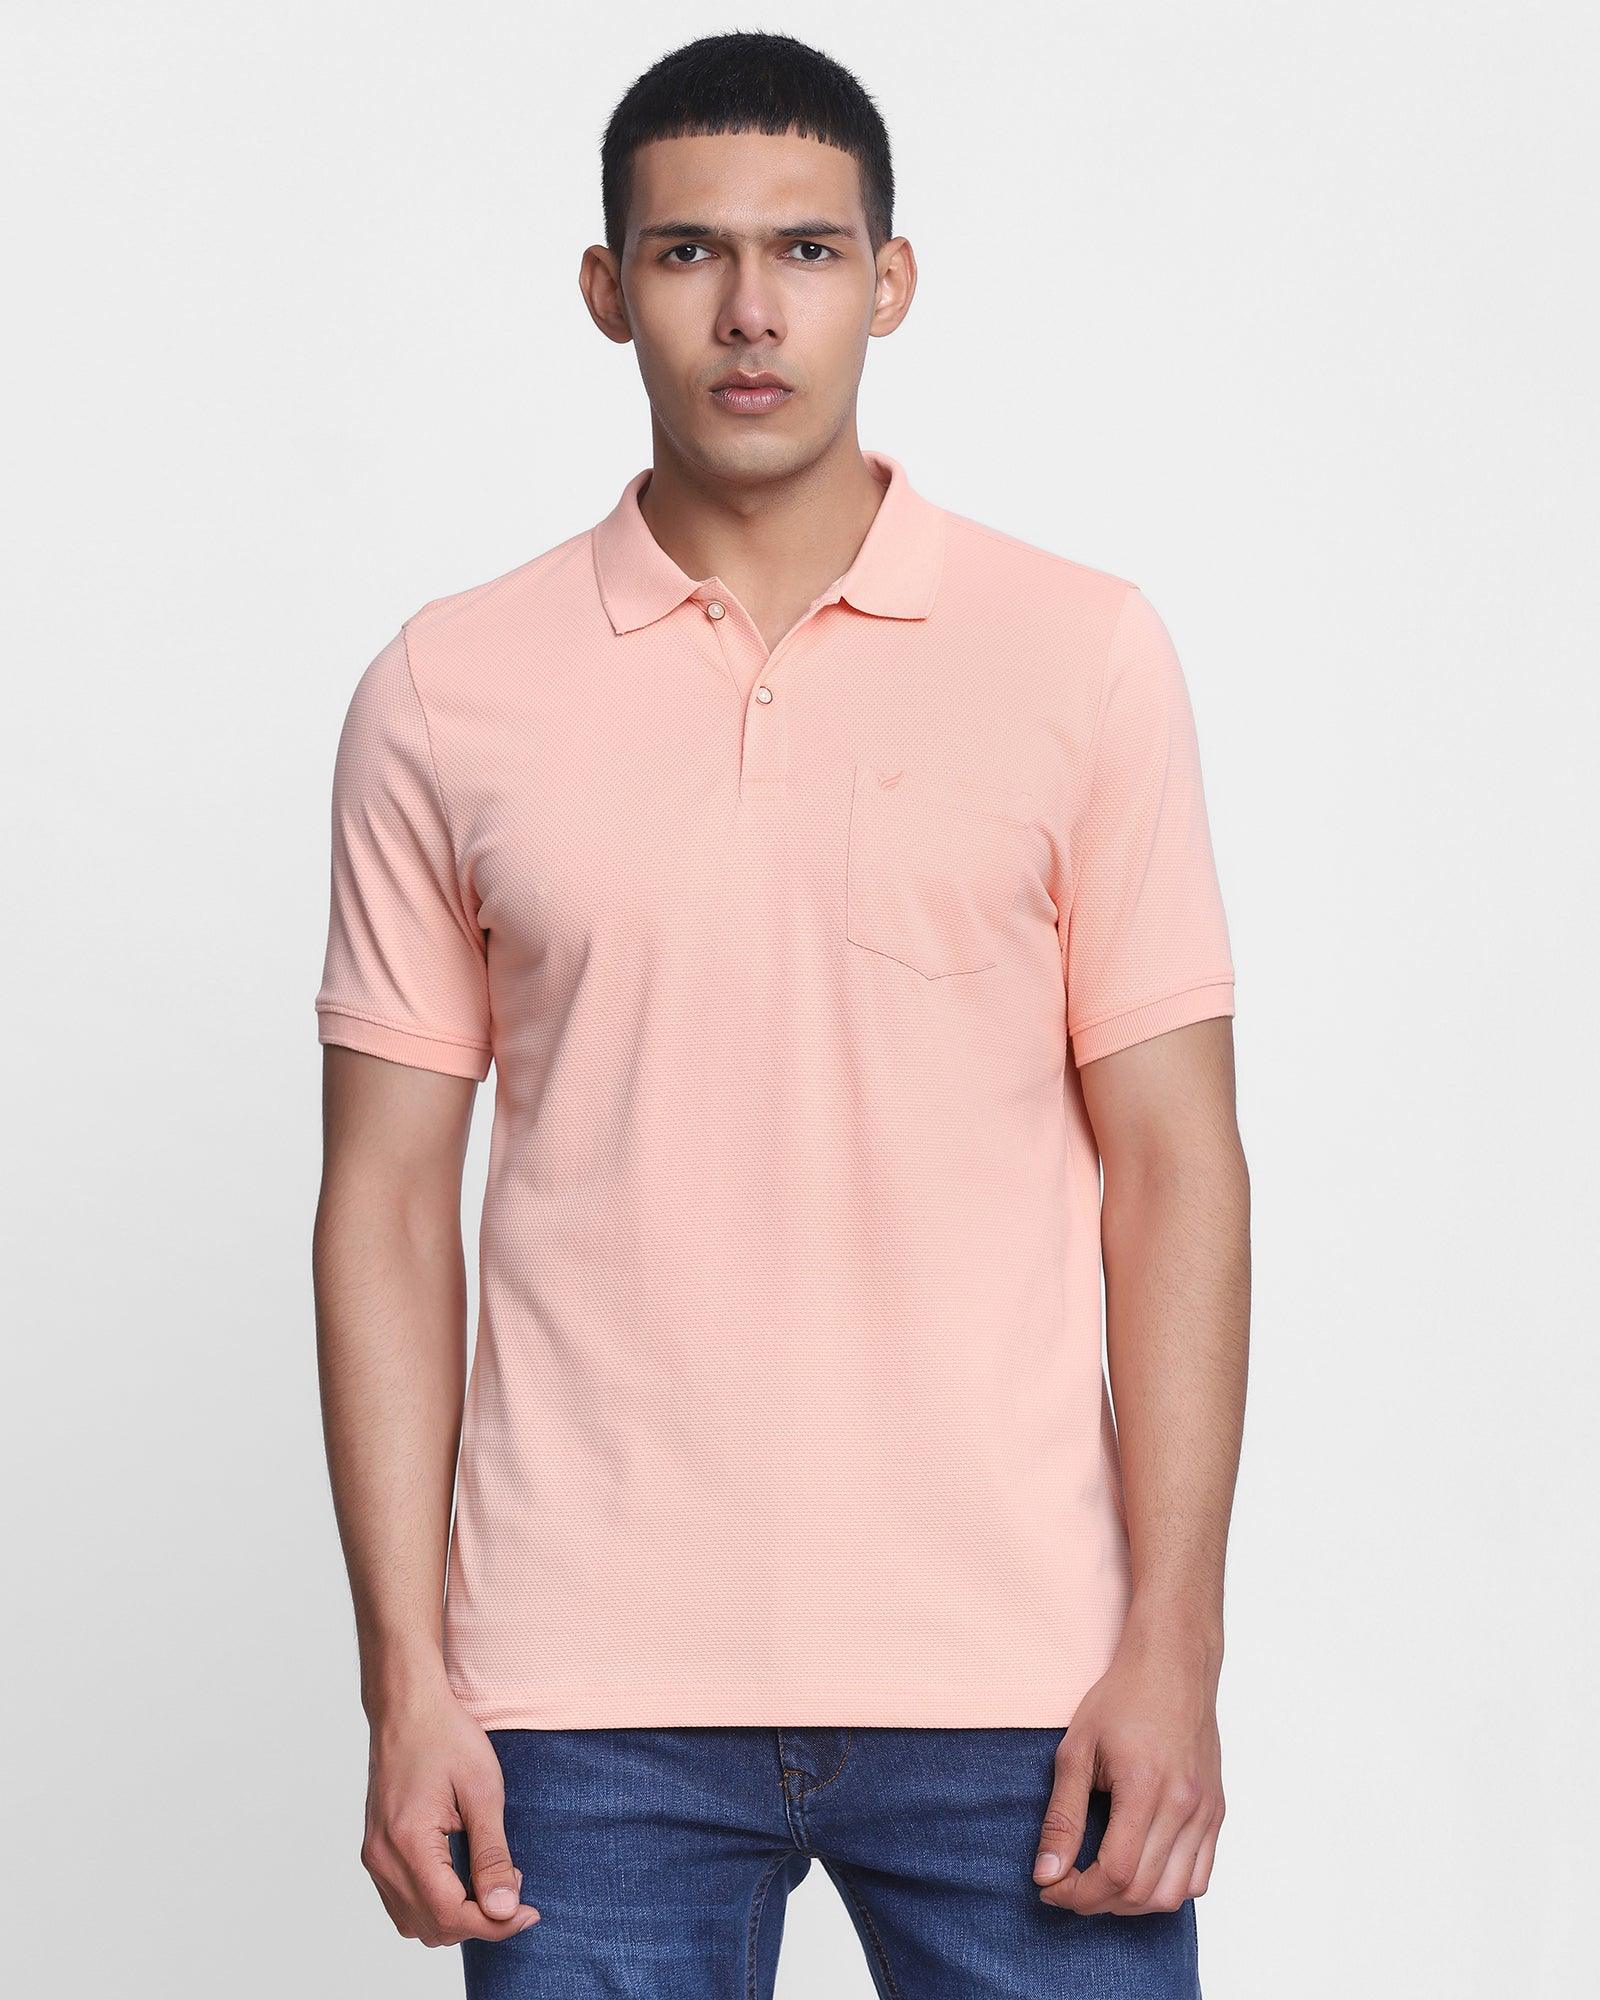 Polo Peach Textured T Shirt - Minla